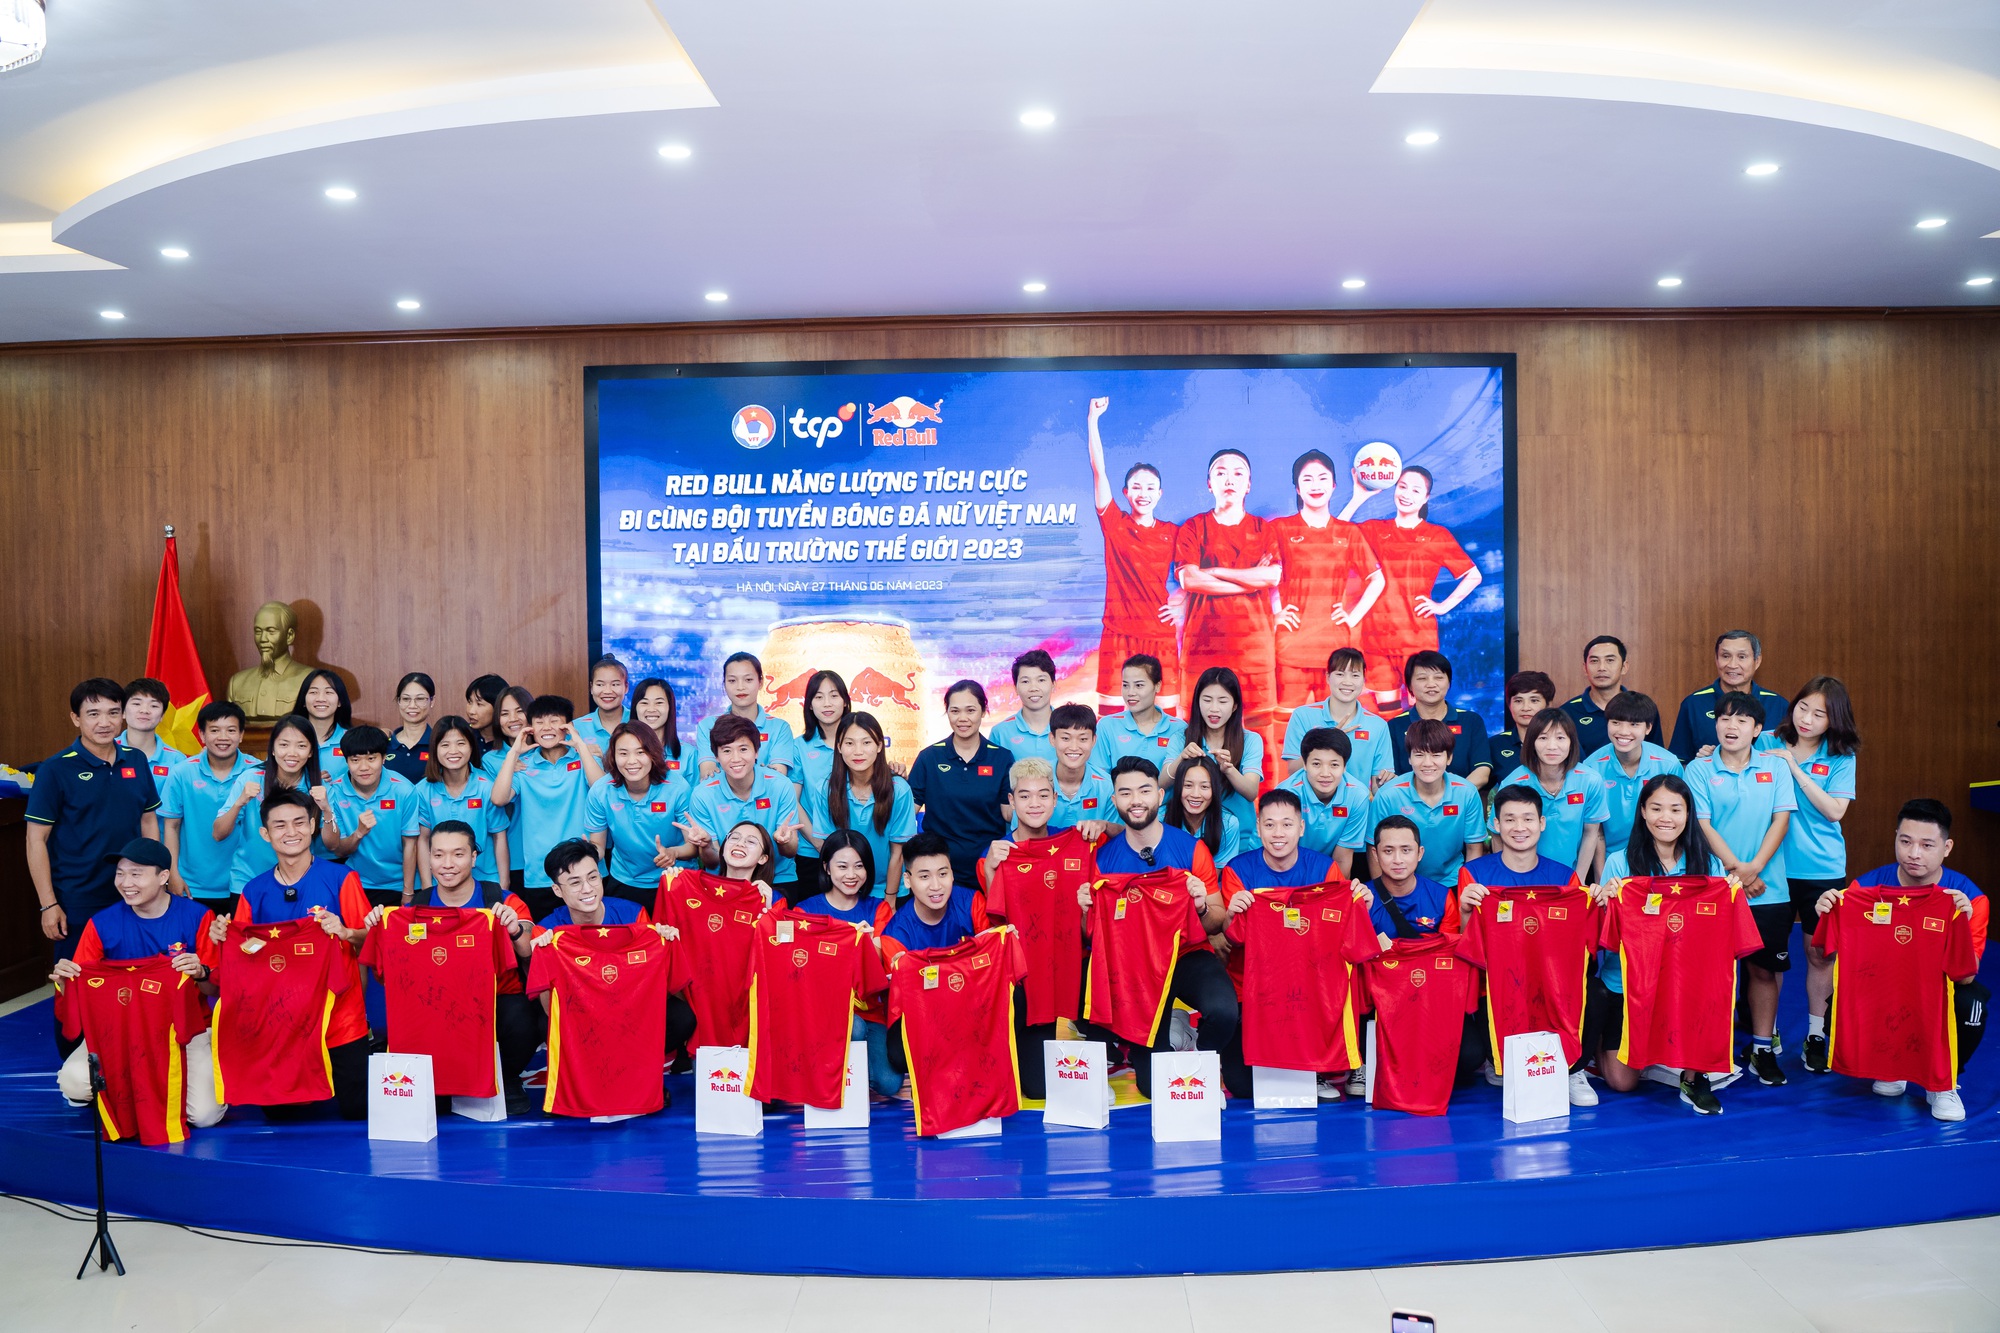 Xúc động khoảnh khắc tiễn đội tuyển nữ Việt Nam hướng đến World Cup 2023 - Ảnh 6.